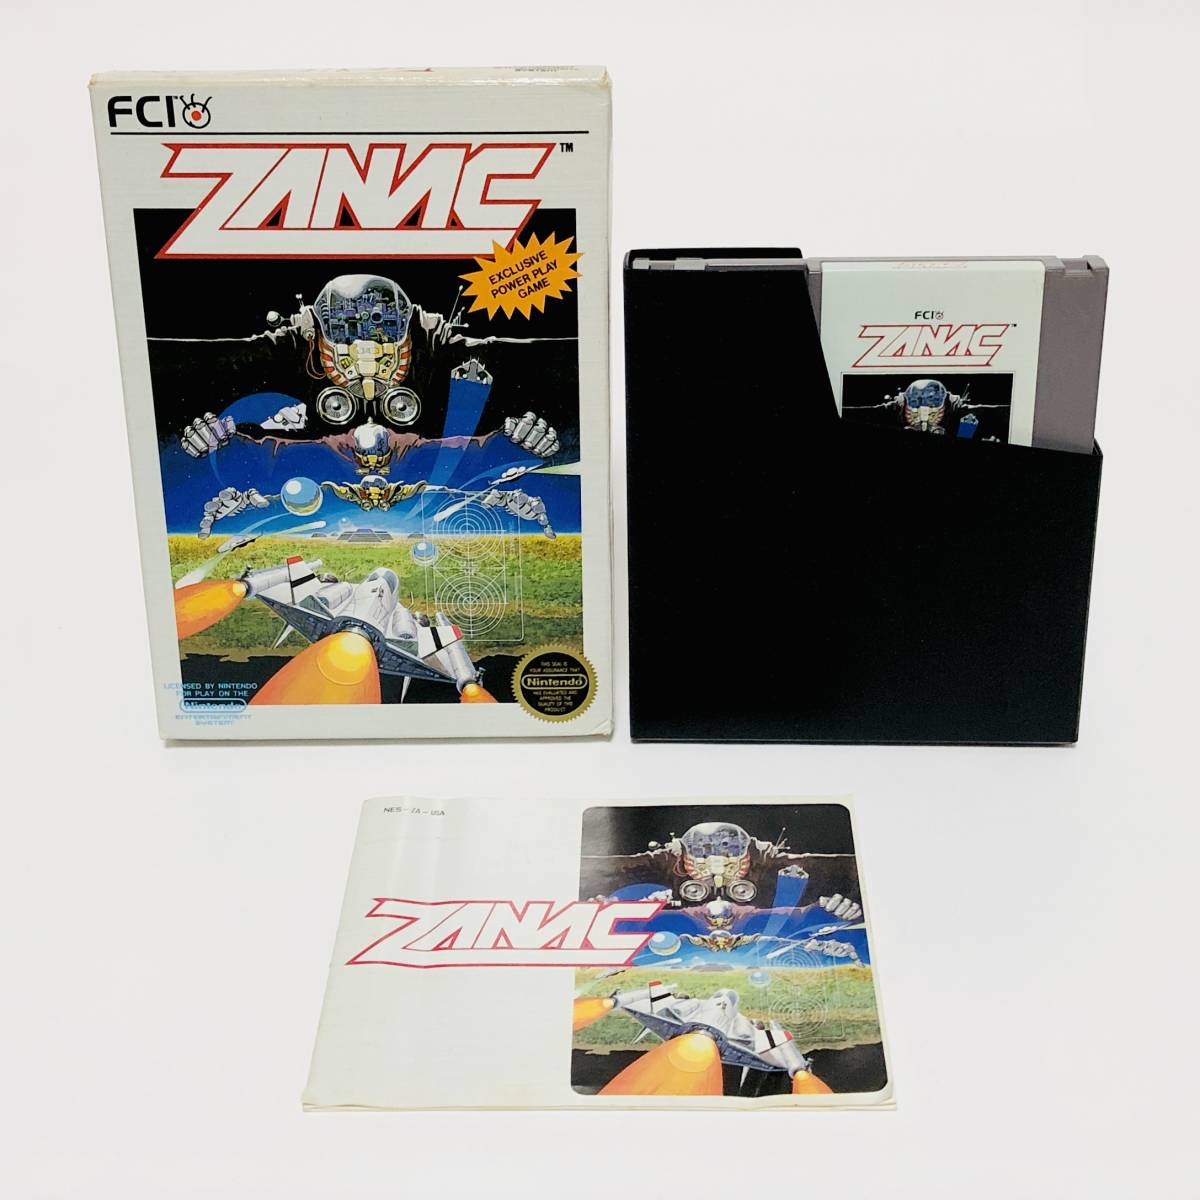 北米版 ファミコン NES ザナック 箱説付き 動作確認済み ポニー コンパイル Nintendo NES Zanac CIB FCI Pony Compile